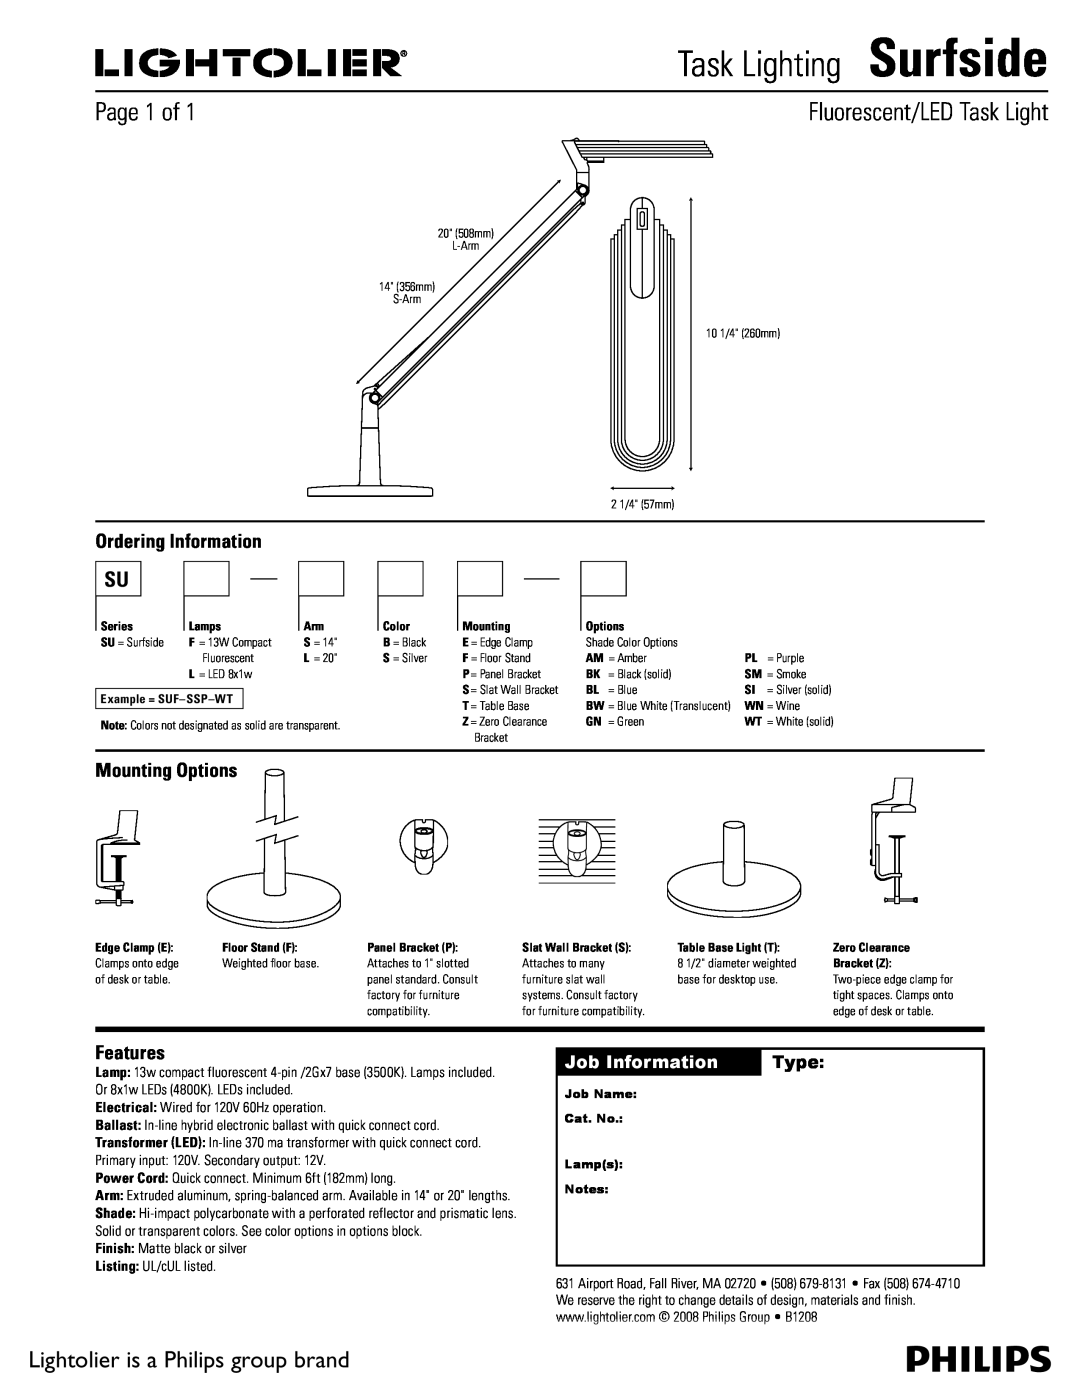 Lightolier manual Task LightingSurfside, Fluorescent/LED Task Light, Page 1 of, Lightolier is a Philips group brand 